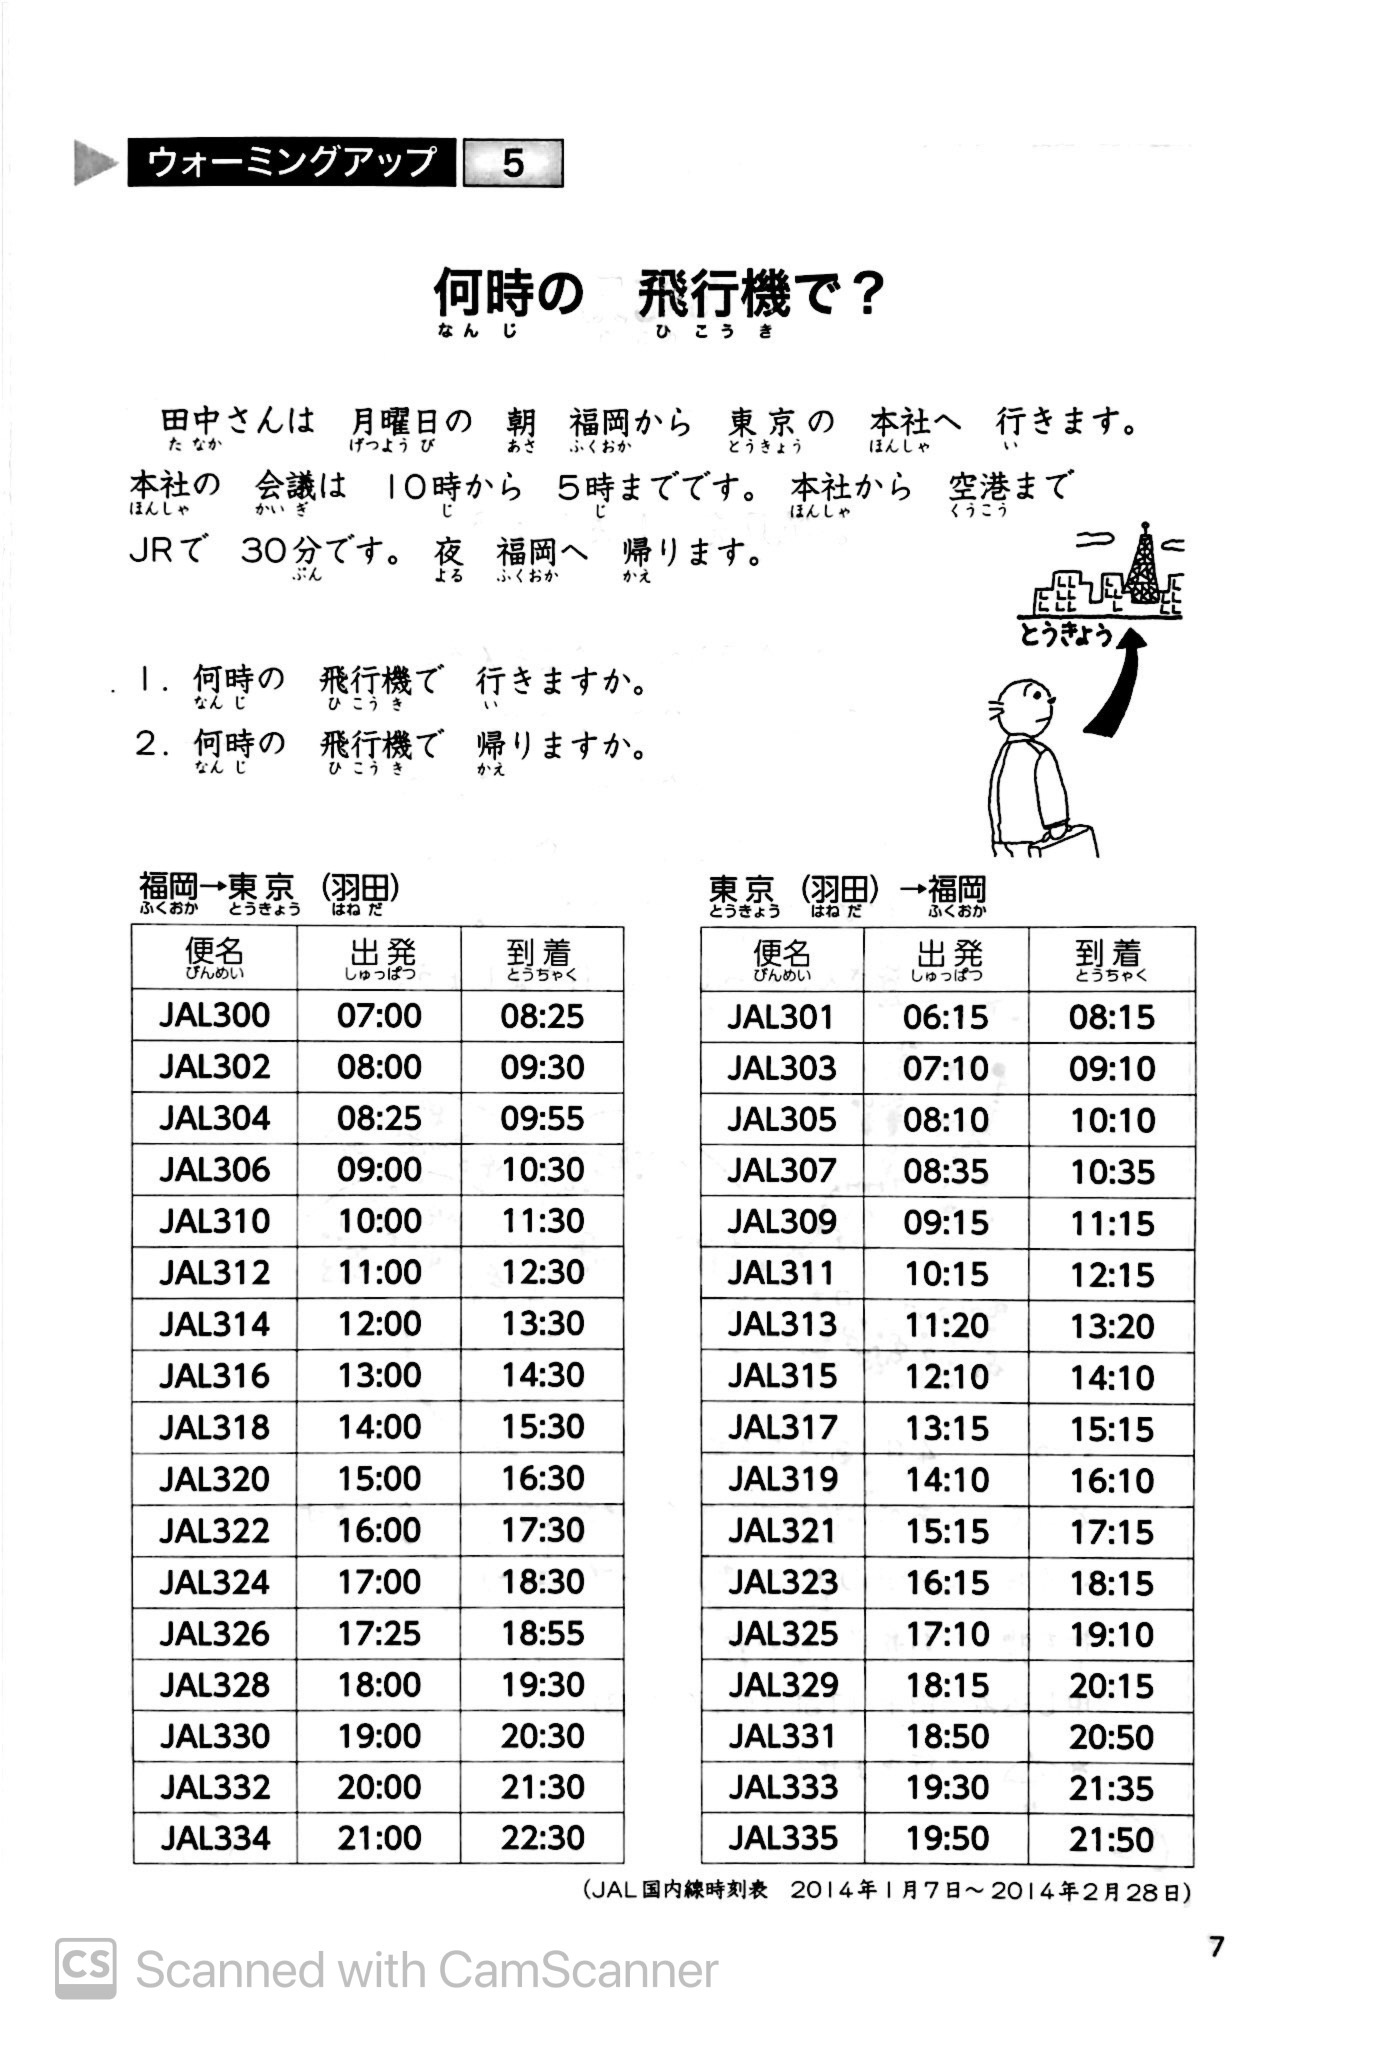 Tiếng Nhật Sơ Cấp 1: 25 Bài Đọc Hiểu Trình Độ Sơ Cấp PDF